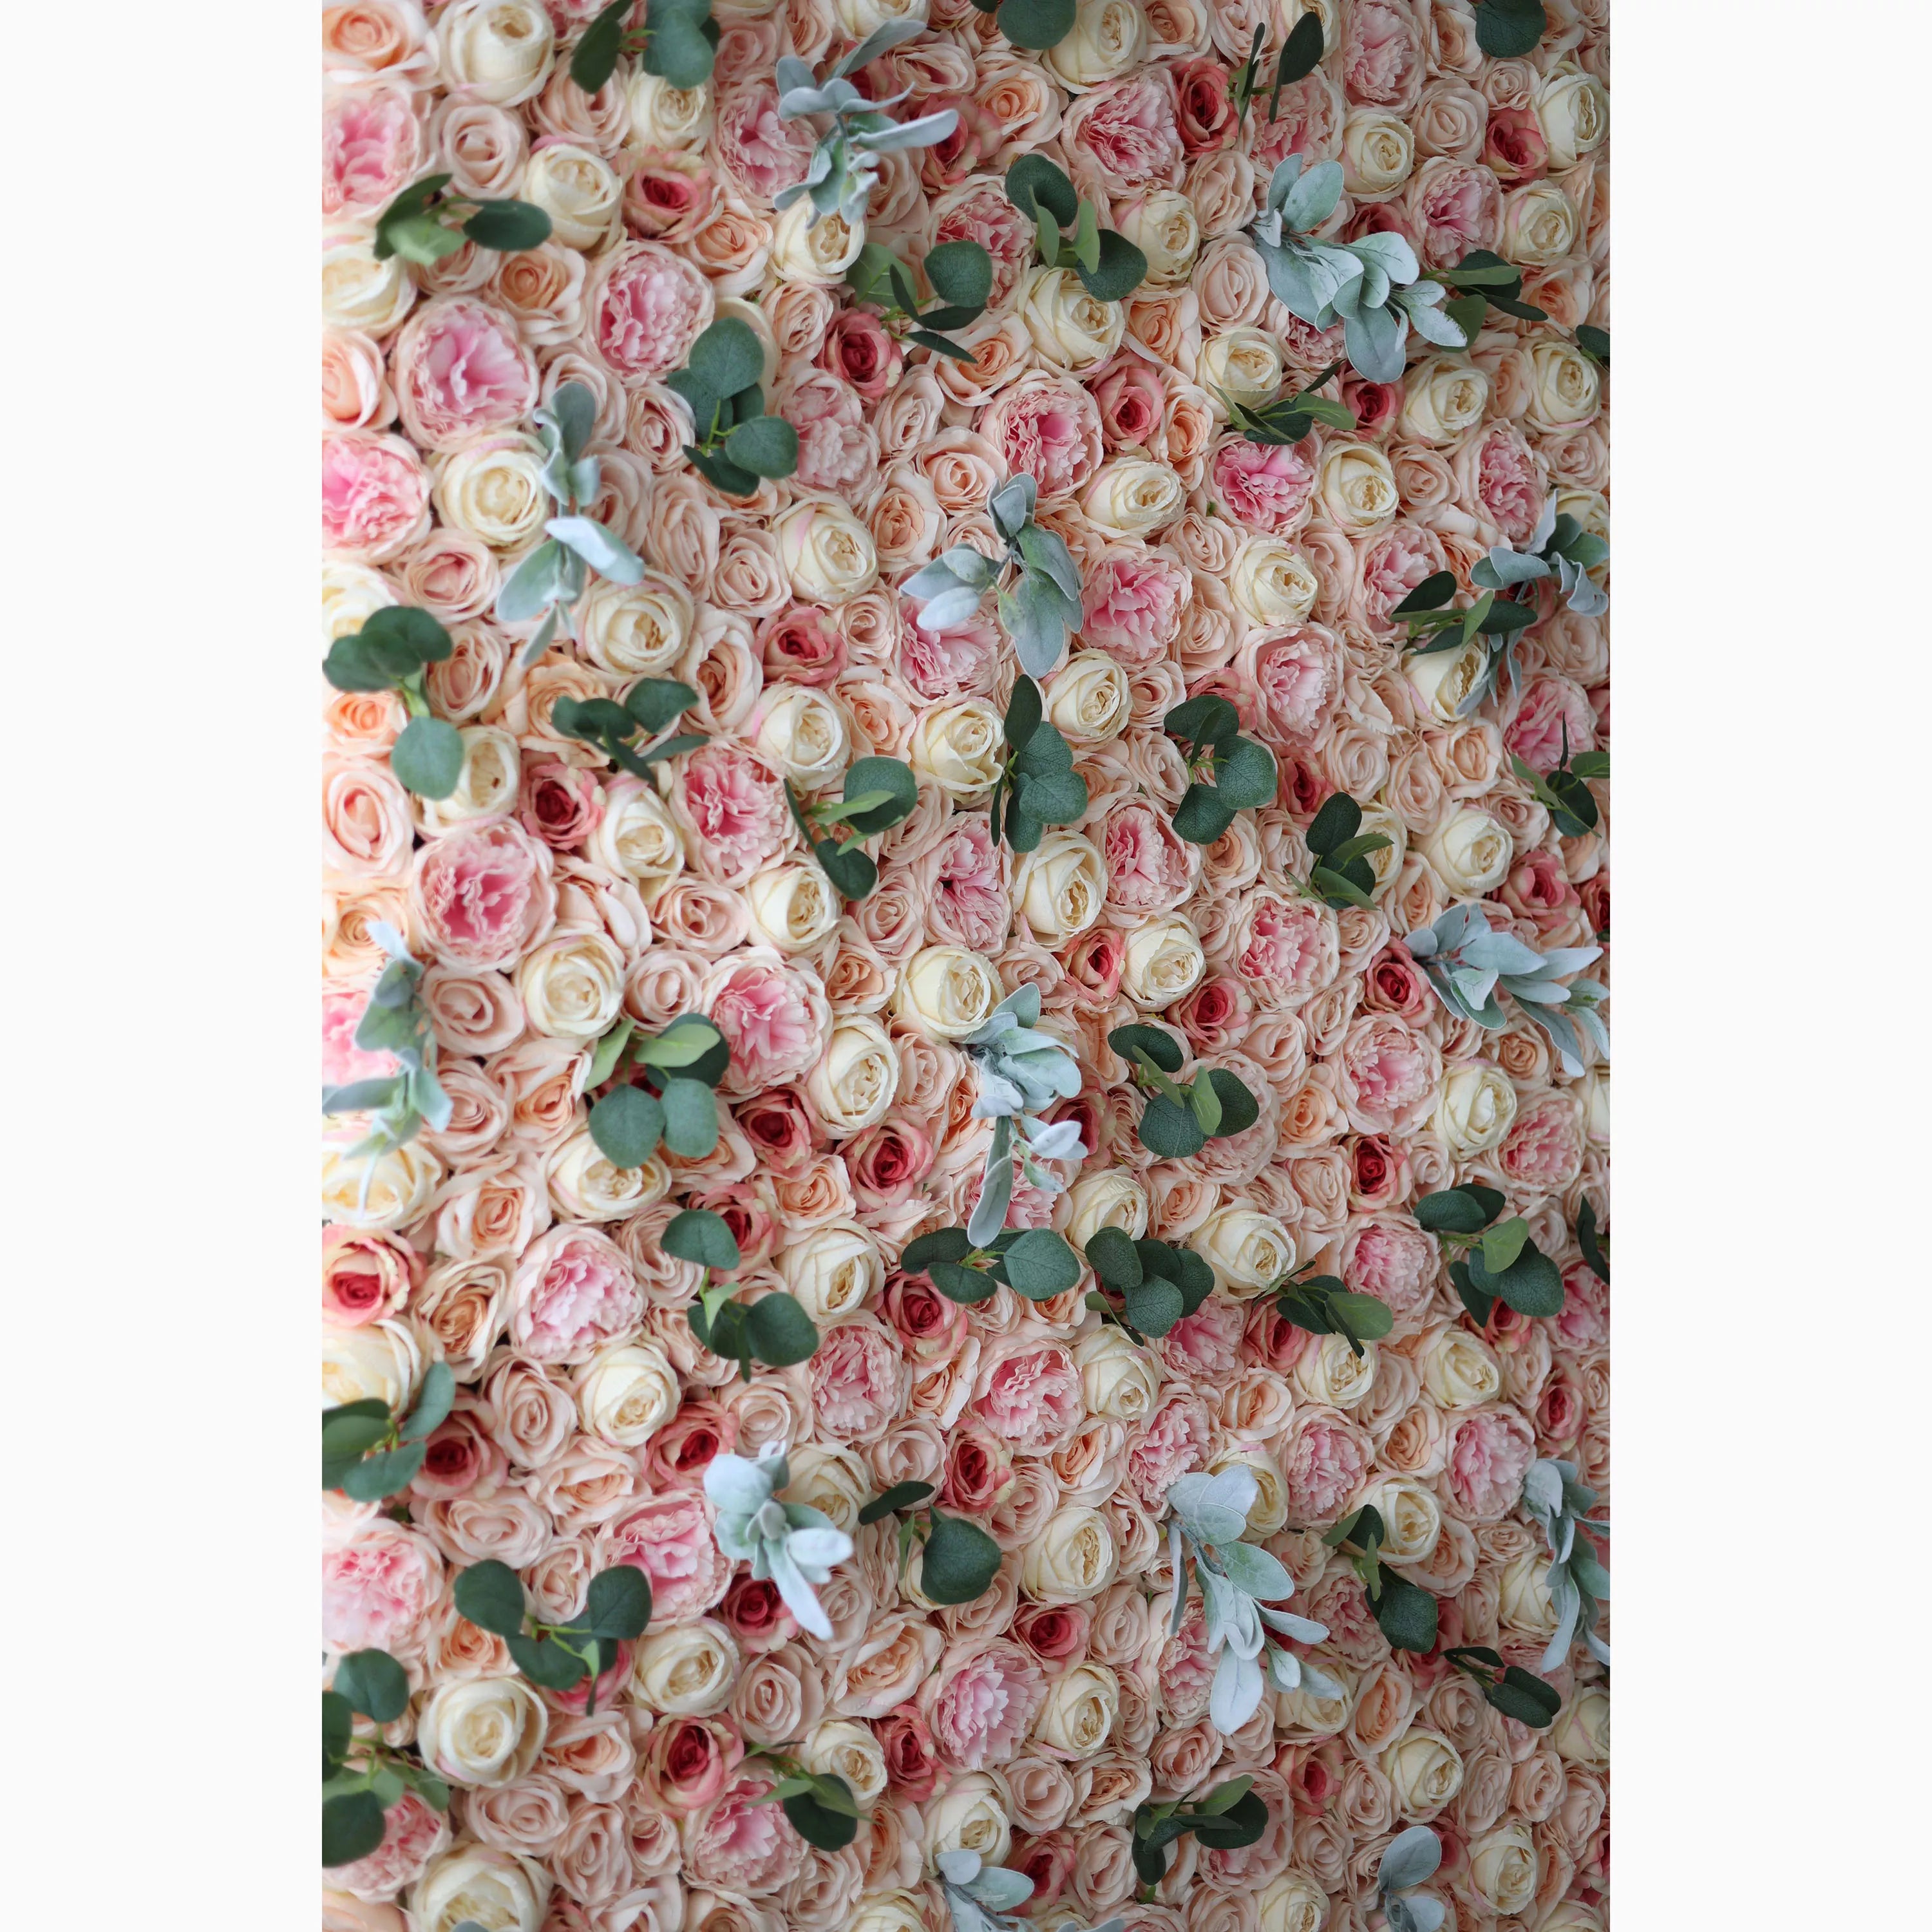 Valar Flowers Showcases : The Peach Blossom Euphoria – Mur de fleurs en tissu artificiel avec blush rose et fleurs de pêche crémeuses – Une toile de fond enchanteresse pour les célébrations et les intérieurs confortables - VF-215 